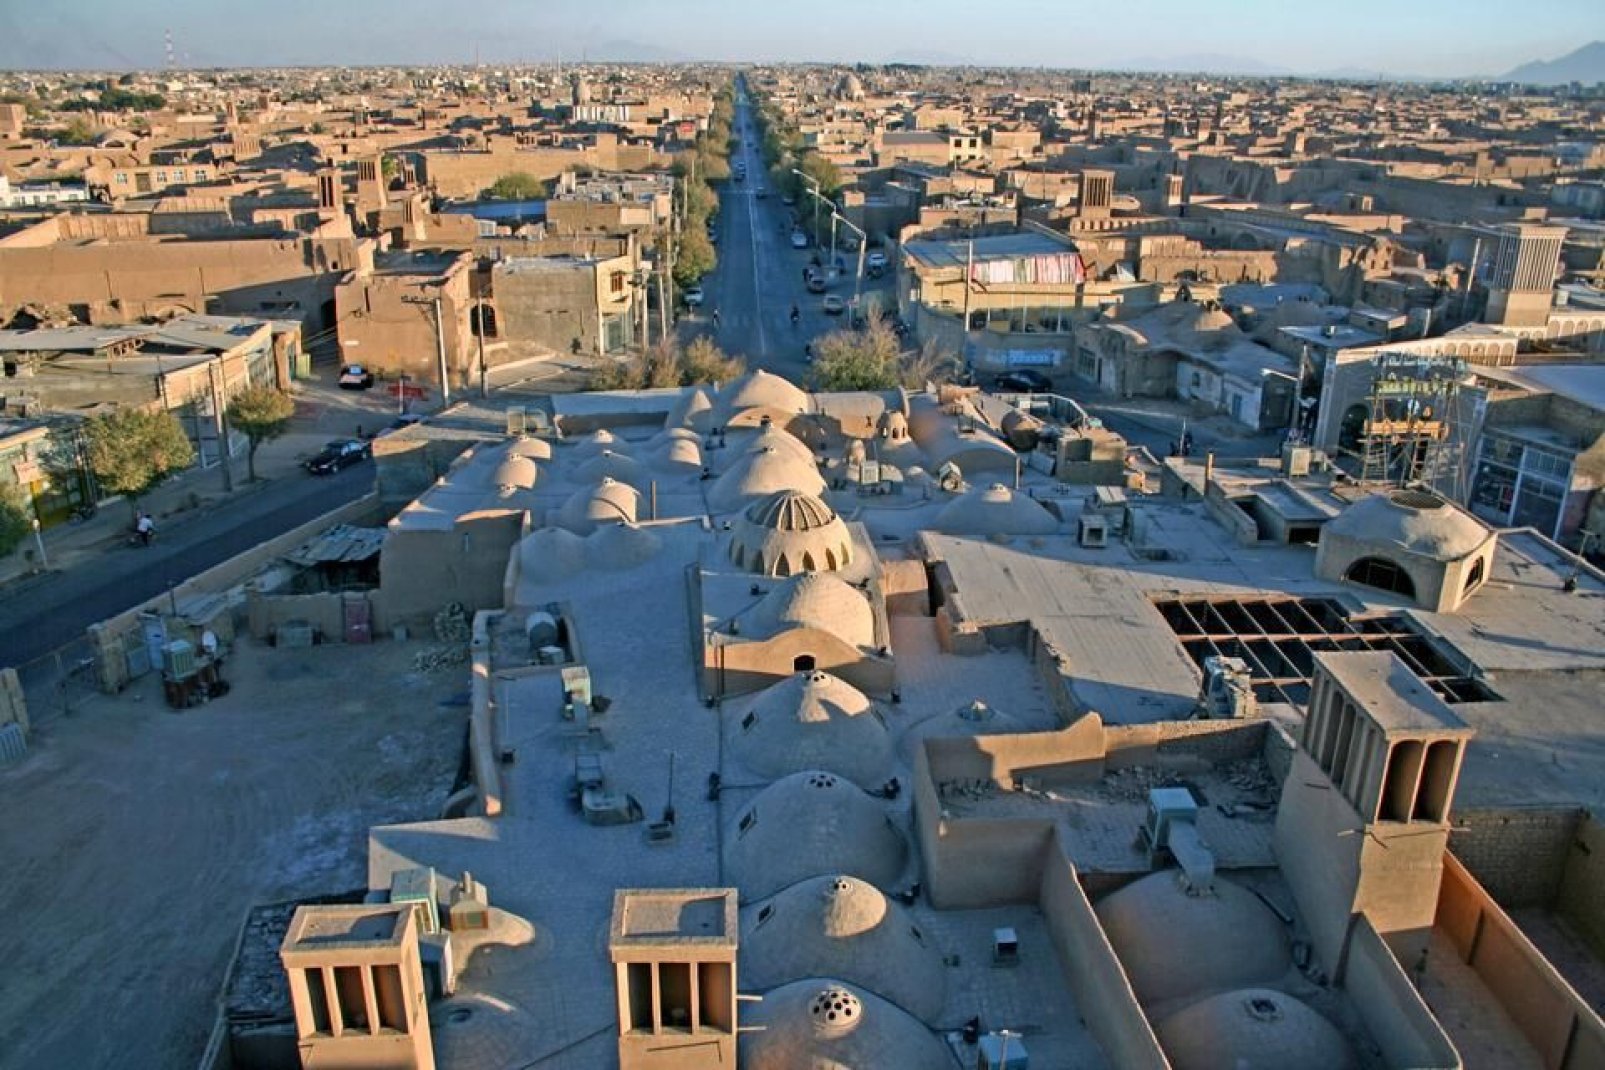 Après l'adaptation de générations à son environnement désertique, Yazd s'est établi comme une ville architecturalement unique.